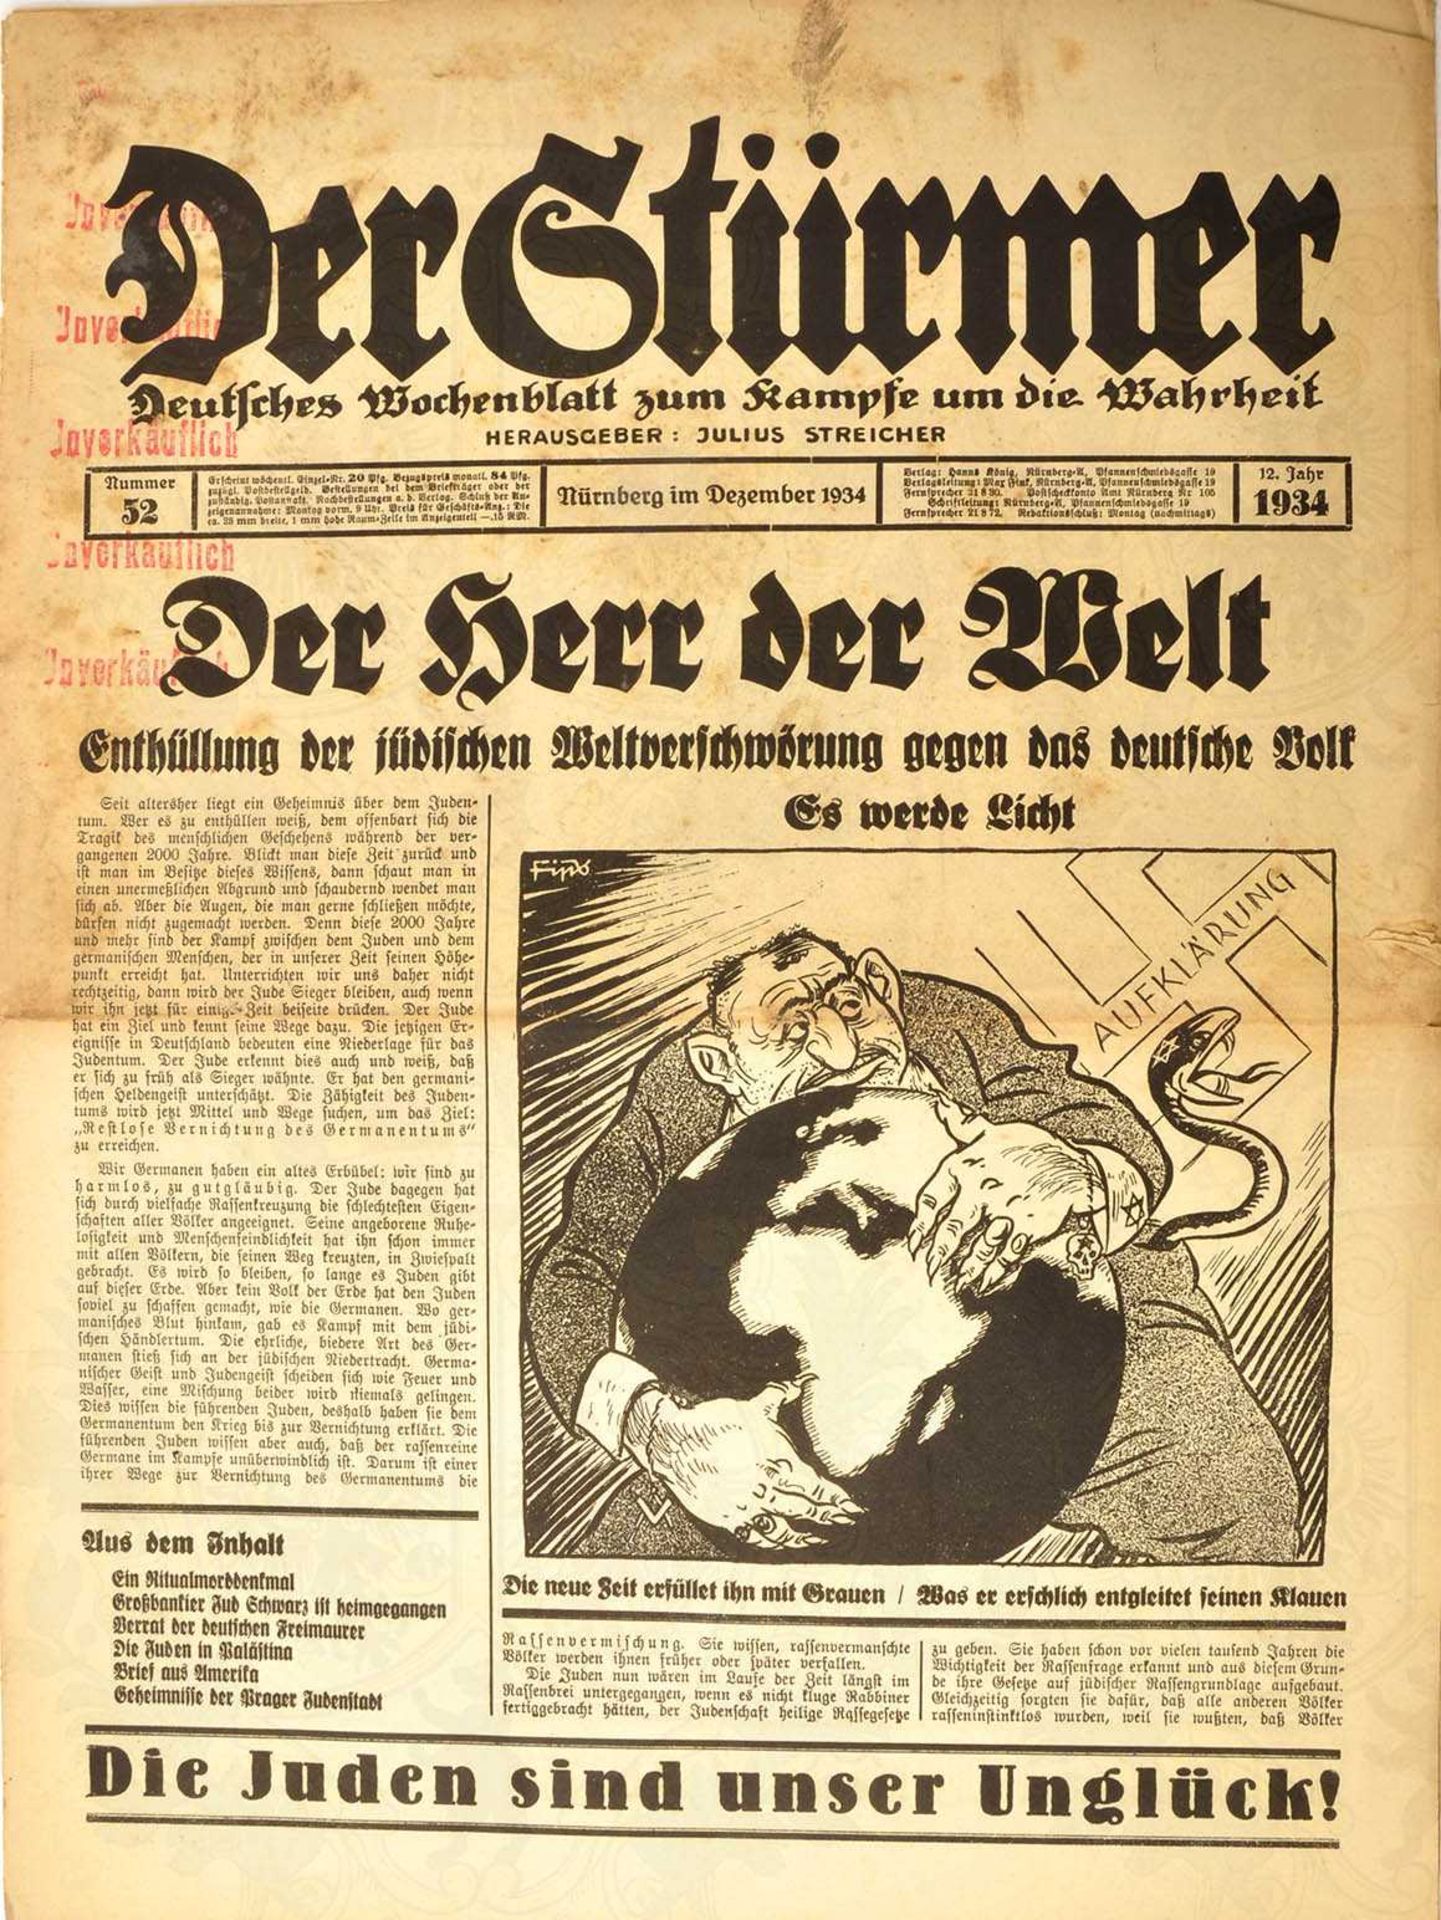 DER STÜRMER, 3 Ausgaben: Mai 1928 (verm. unkpl.), S. lose; Dez. 1934 u. Okt. 1935, alle m. - Image 2 of 3